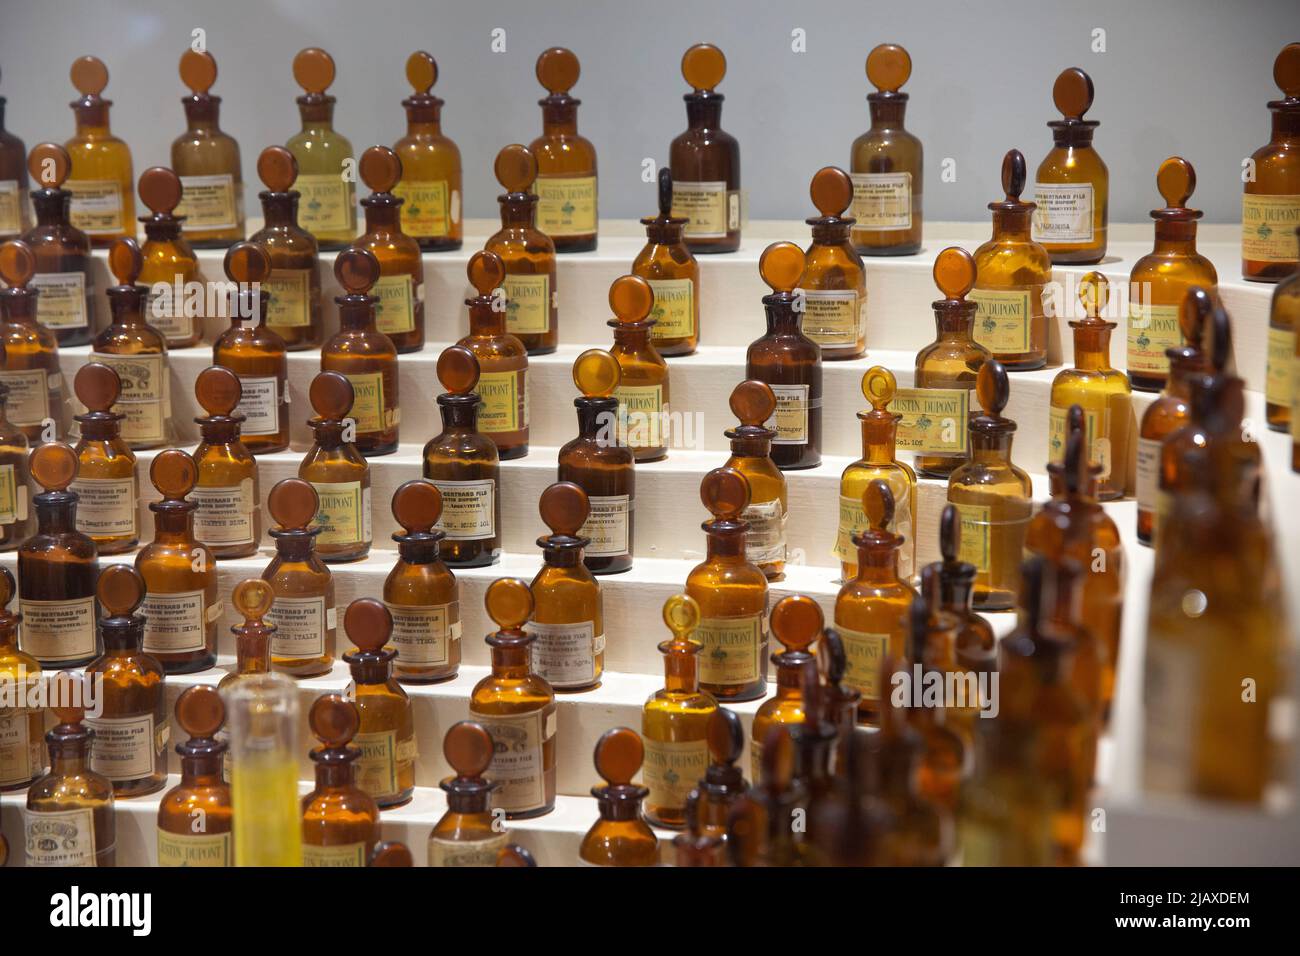 El órgano del perfumista que pertenecía a Jean Carles, creador de perfumes  de principios del siglo 20th, entre ellos Miss Dior y Ma Griffe de Carven,  en el Musée International de la